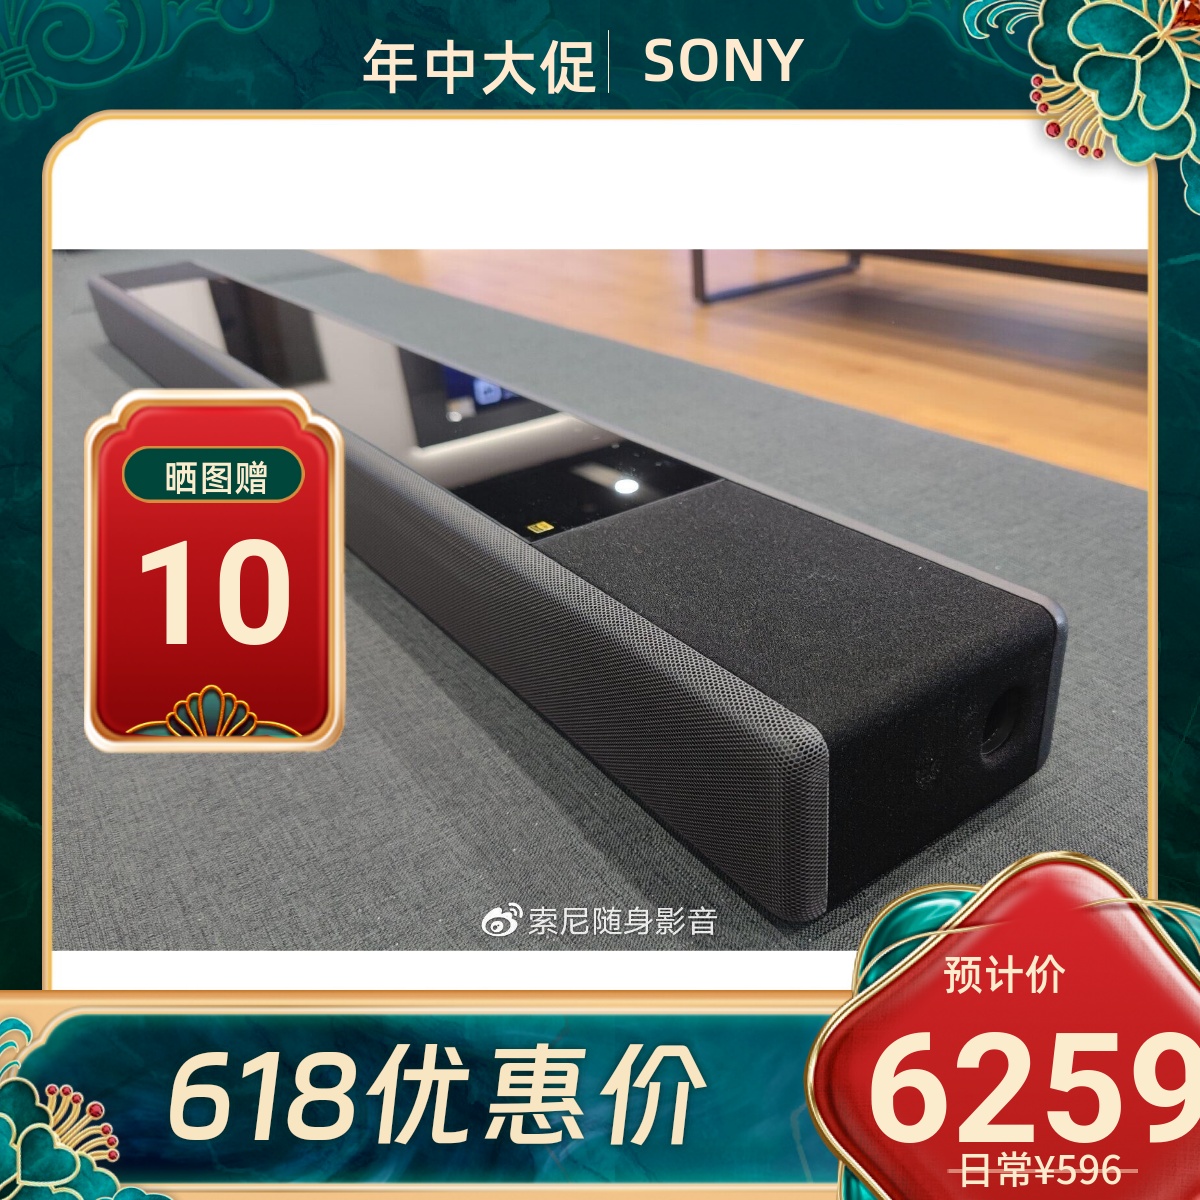 Sony/索尼 HT-A7000 电视回音壁客厅音响杜比7.1.2全景声音效音箱